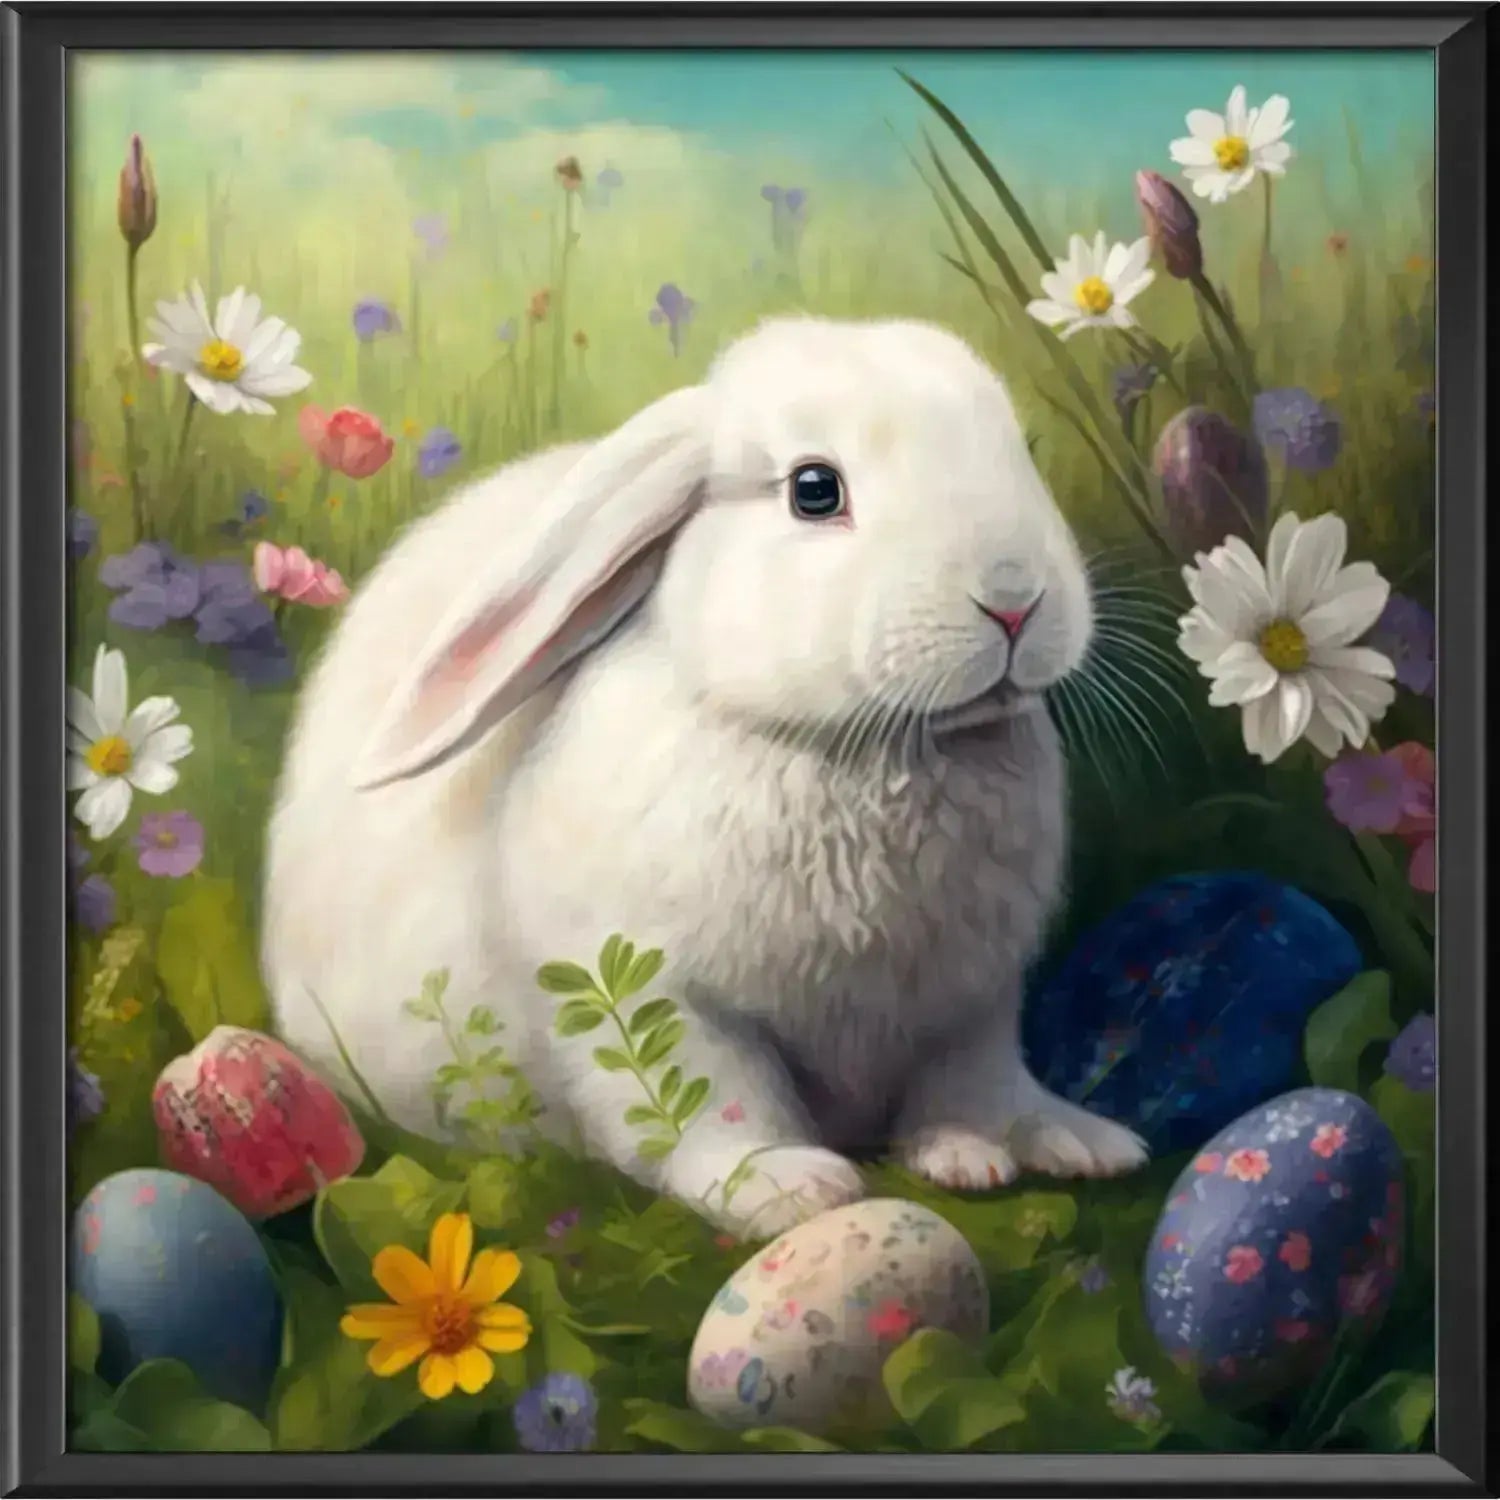 Easter Bunny Diamond Painting - Diamond Painting